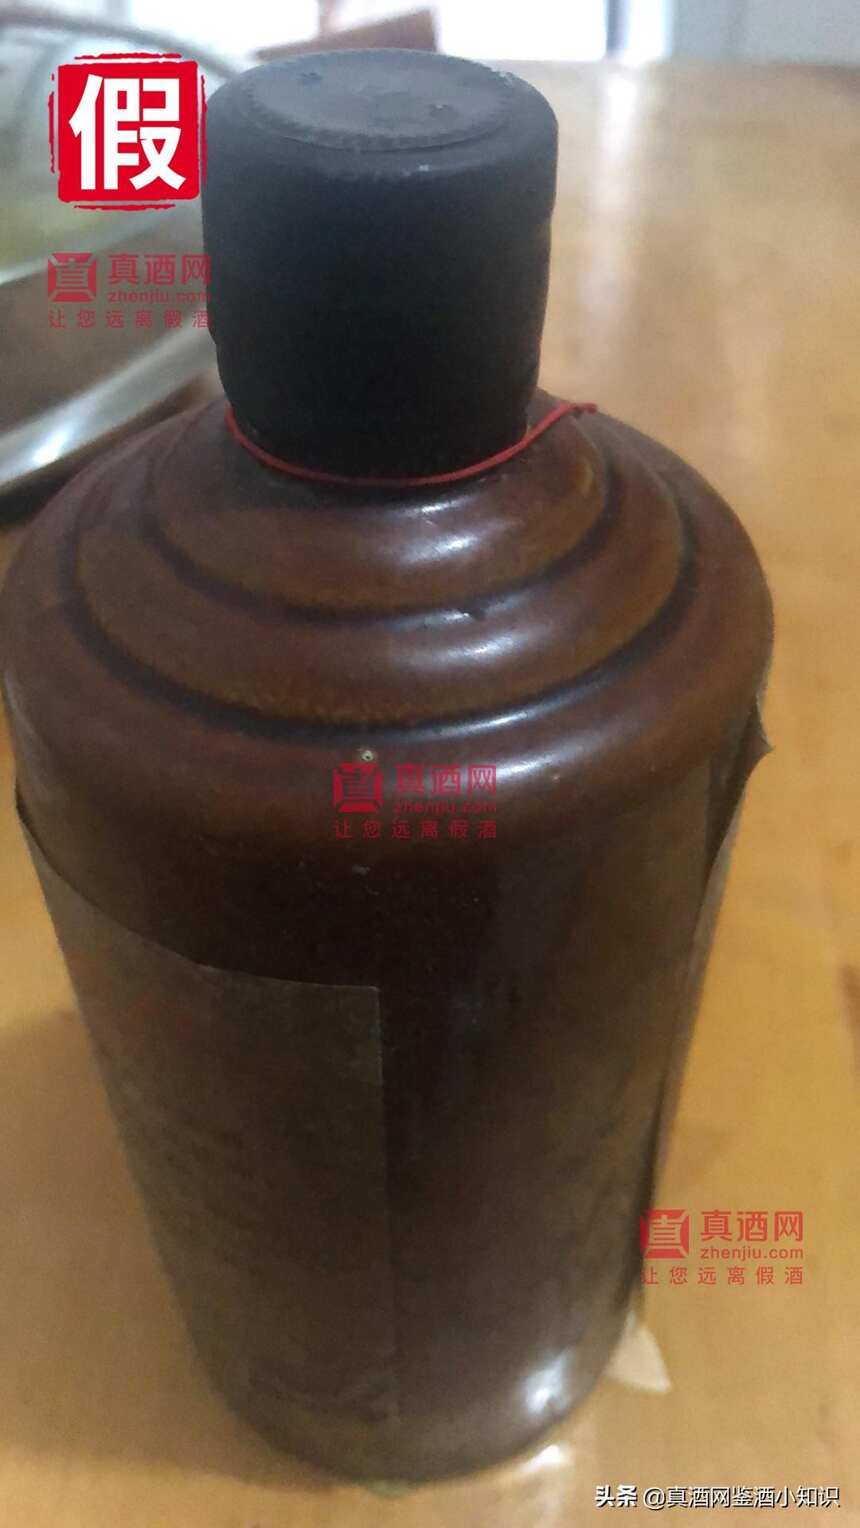 茅台从来都没有生产过黑色瓶帽的酒